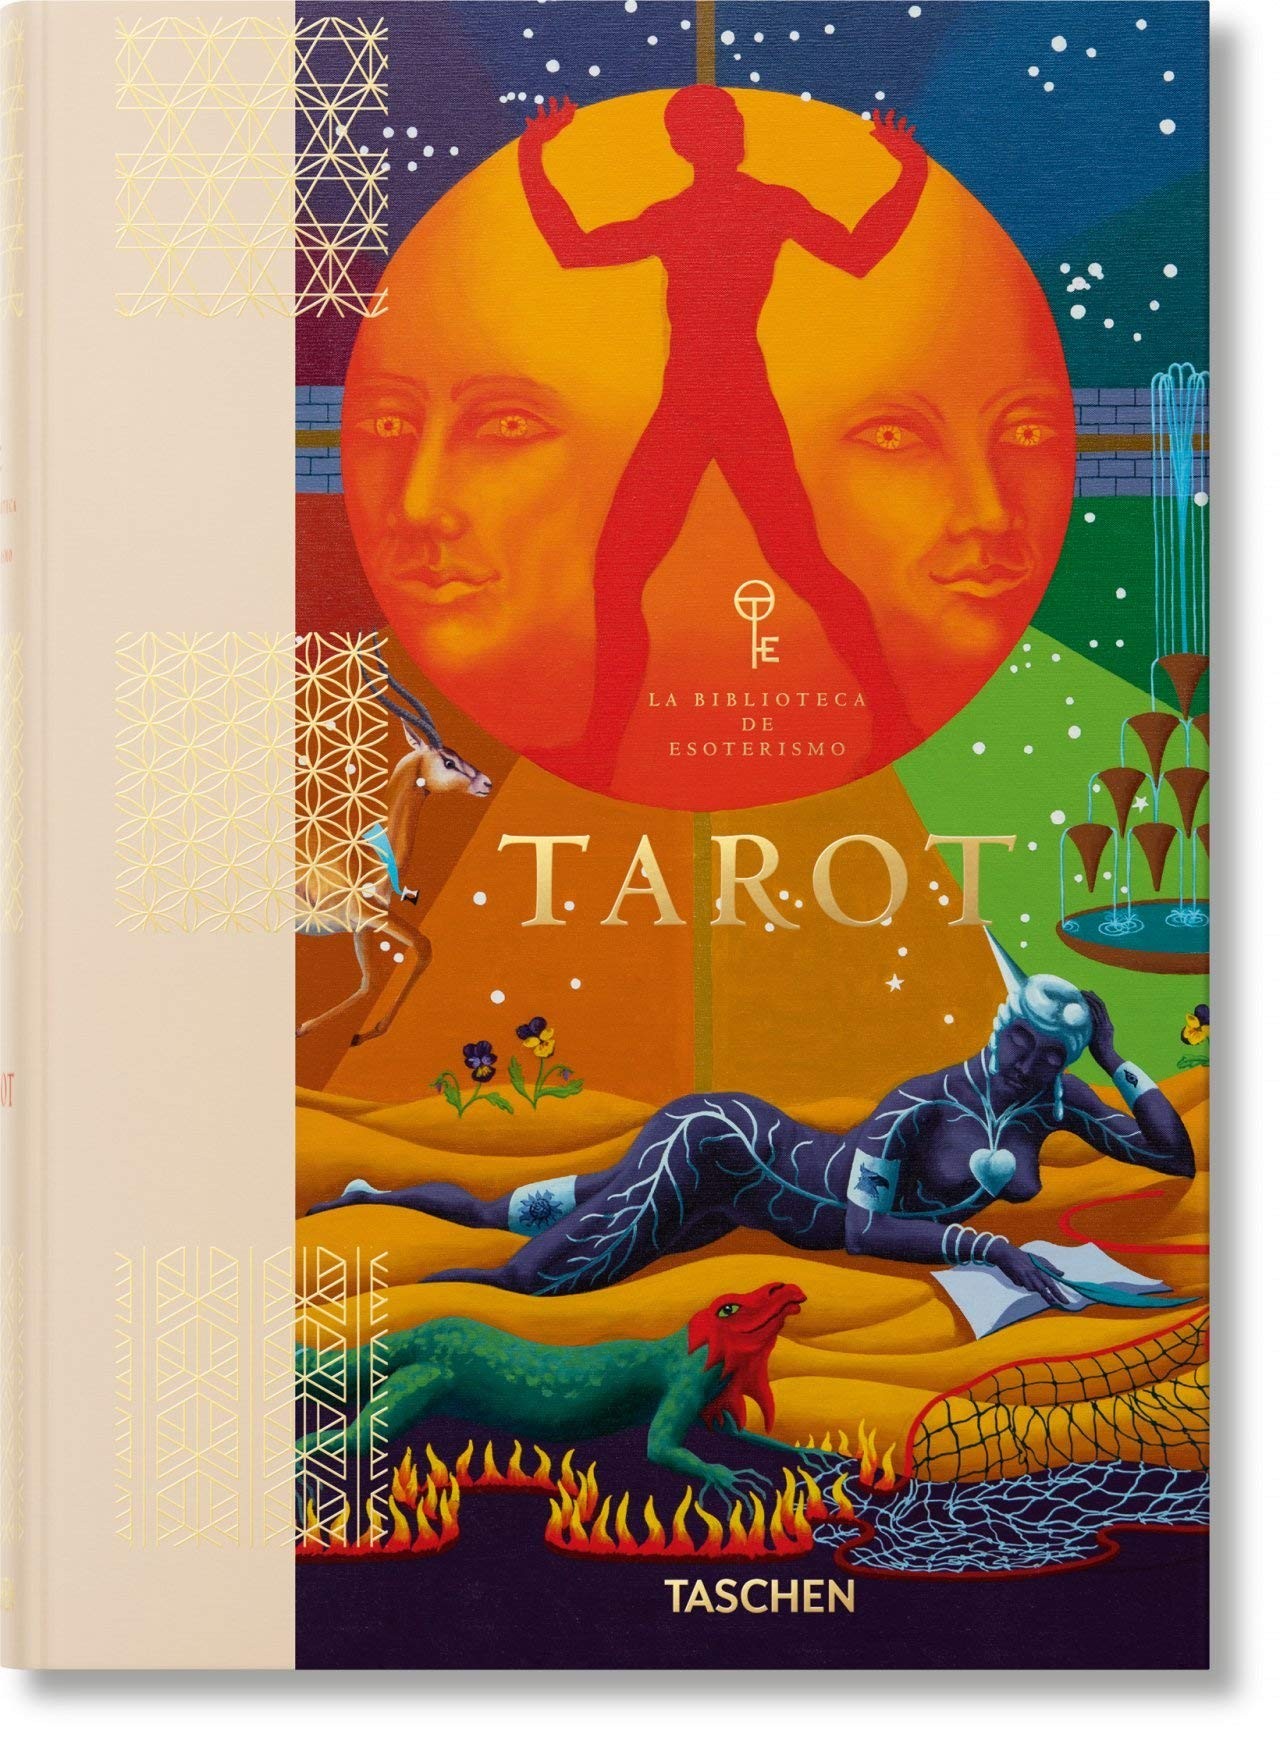 Tarot: A visual history of Tarot